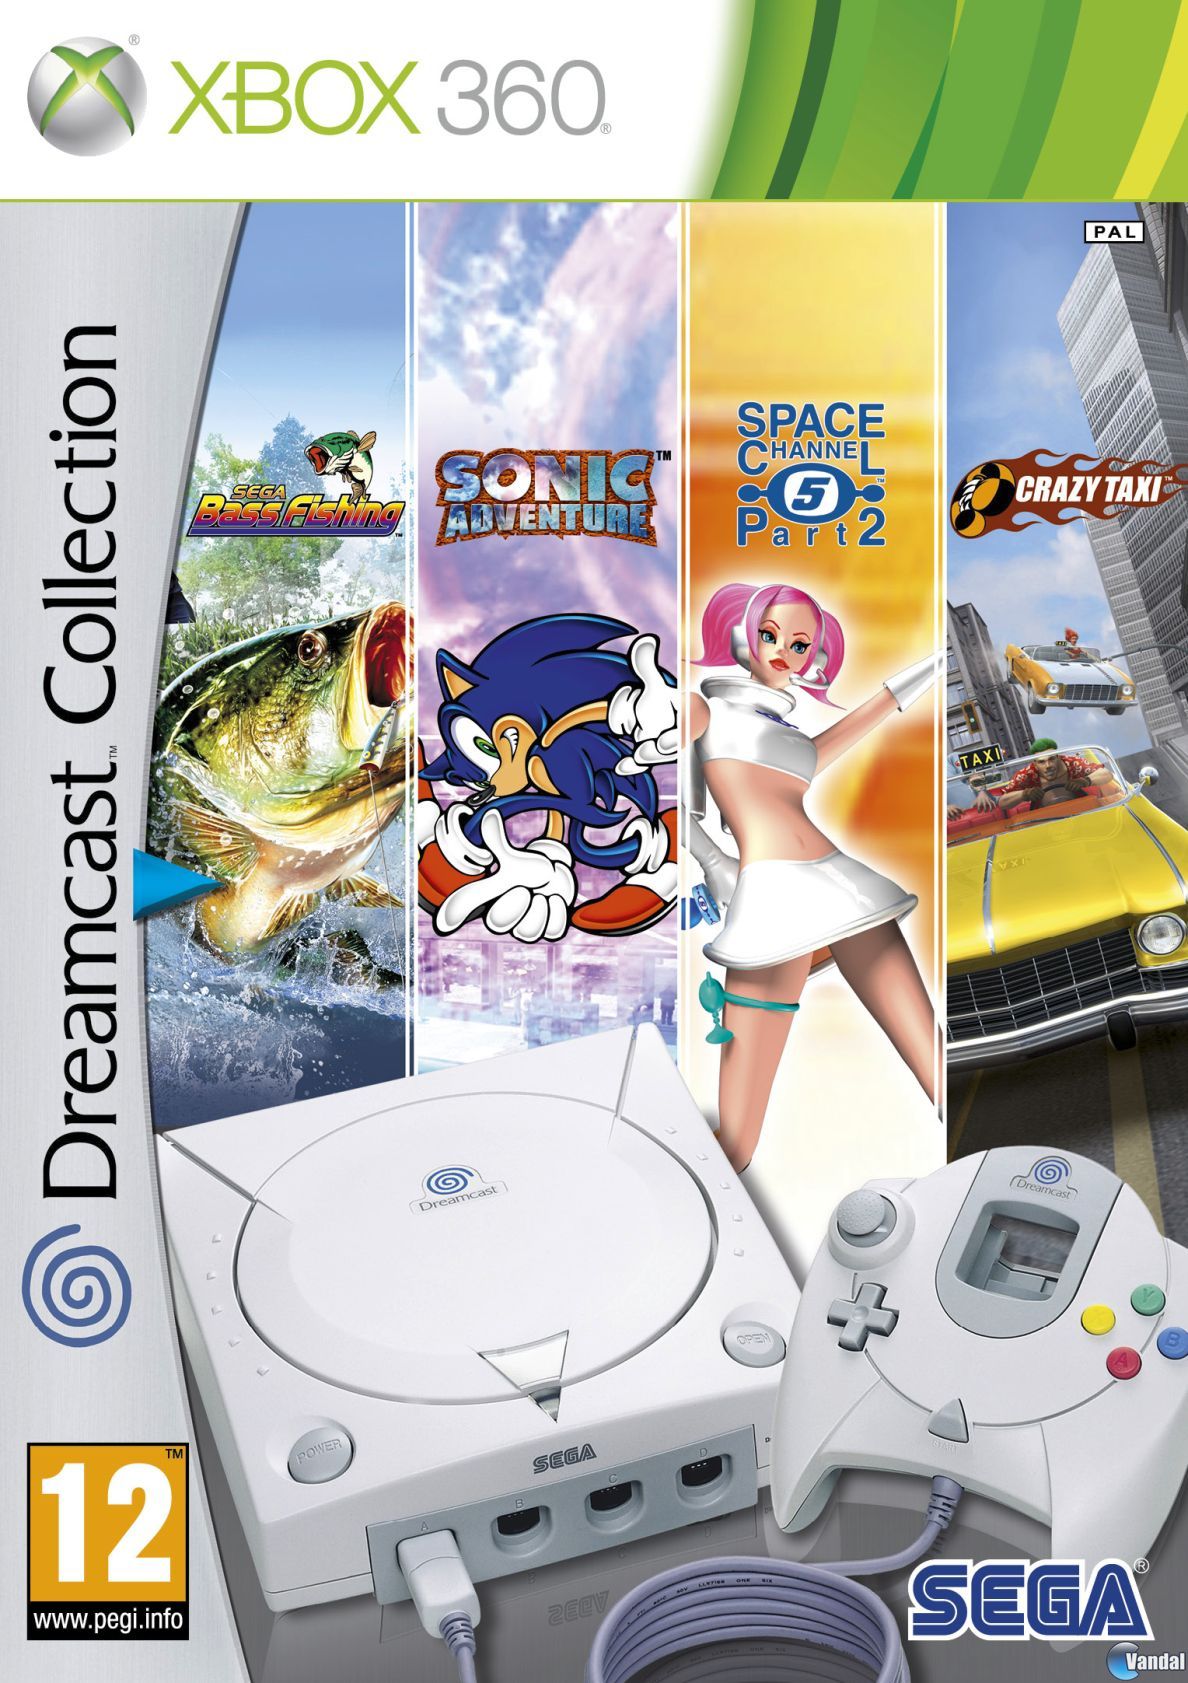 Sega Dreamcast PAL Games  Sega dreamcast, Retro video games, Sega